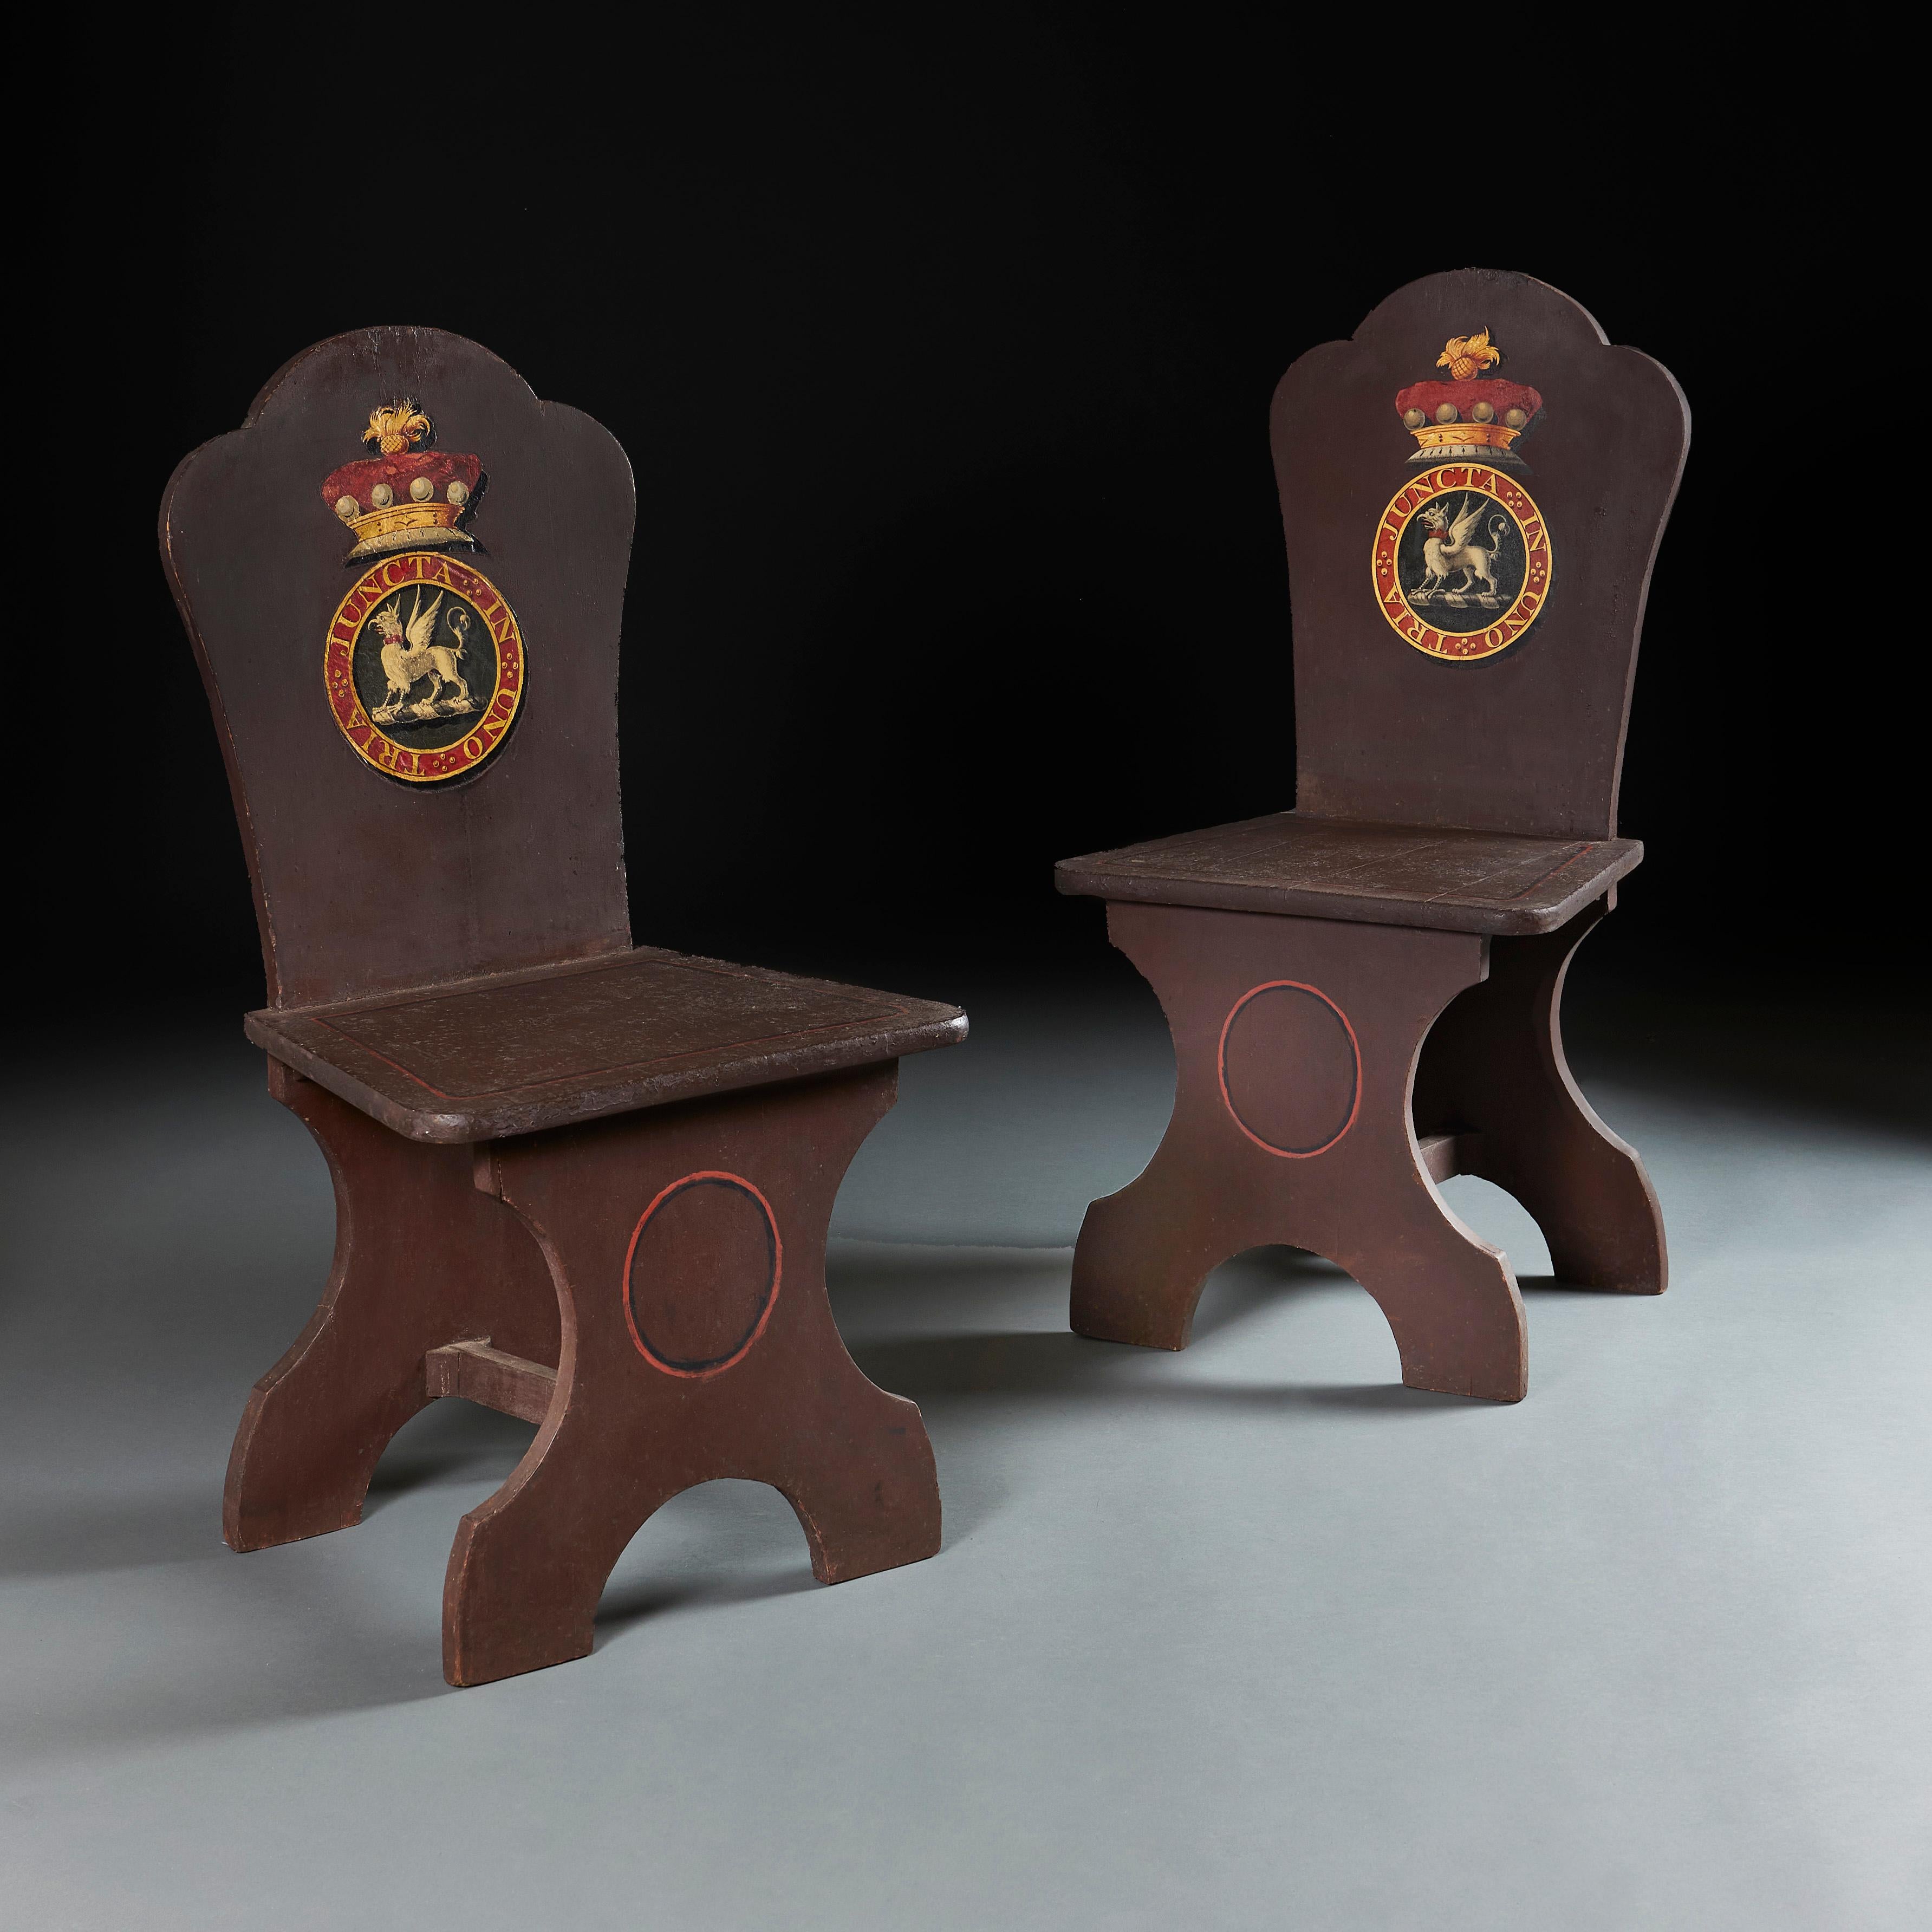 Angleterre, vers 1840

Paire de chaises de salle peintes du milieu du XIXe siècle, avec armoiries appliquées, décorées d'une couronne de comte et de l'Ordre du Bain.

Hauteur 99.00cm
Largeur 51.00cm
Profondeur 27.00cm
Hauteur d'assise 46.00cm